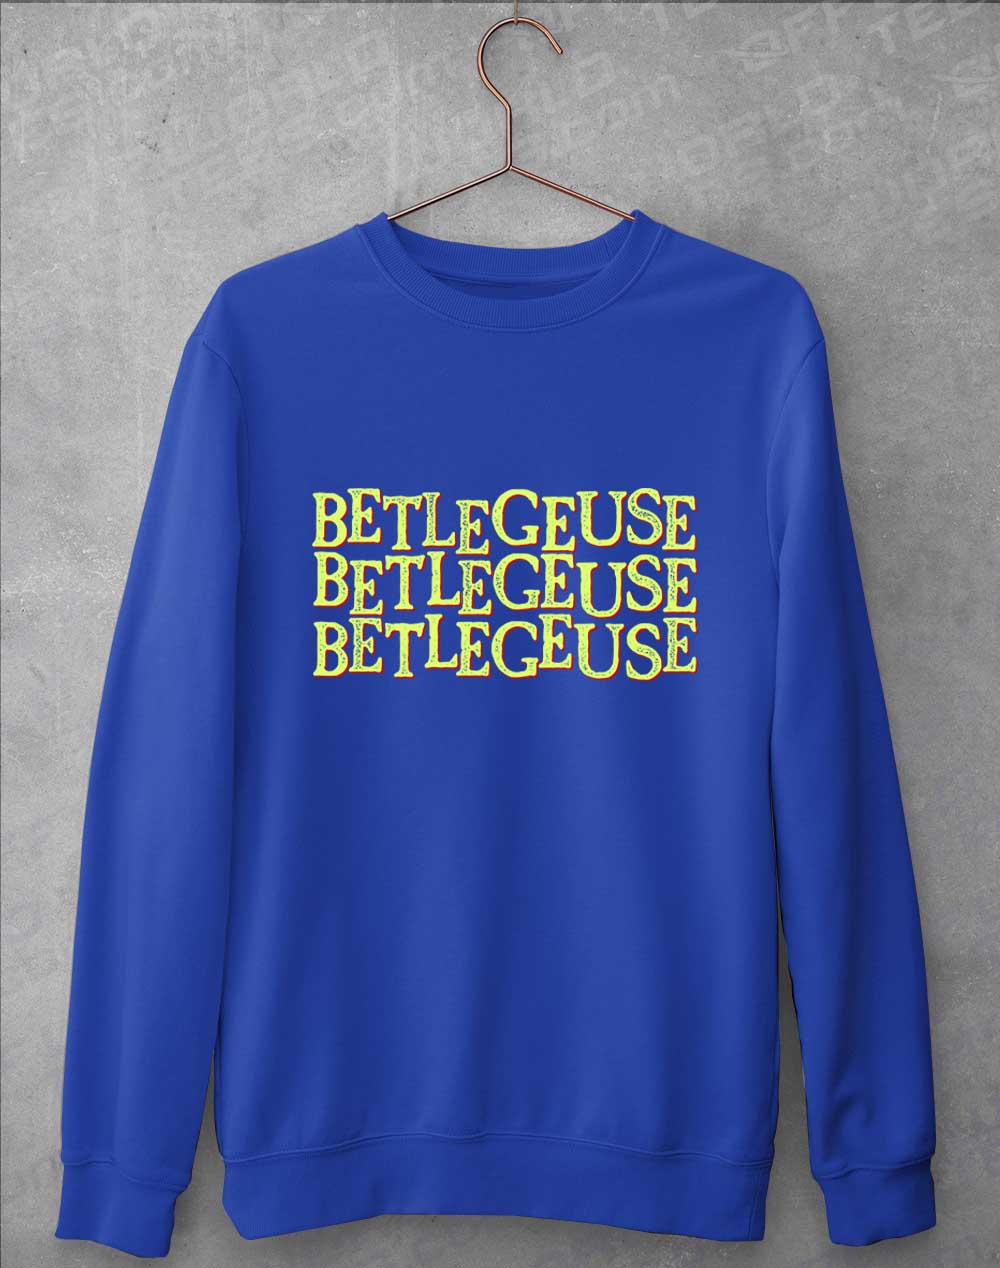 Royal Blue - Betelgeuse Betelgeuse Betelgeuse Sweatshirt